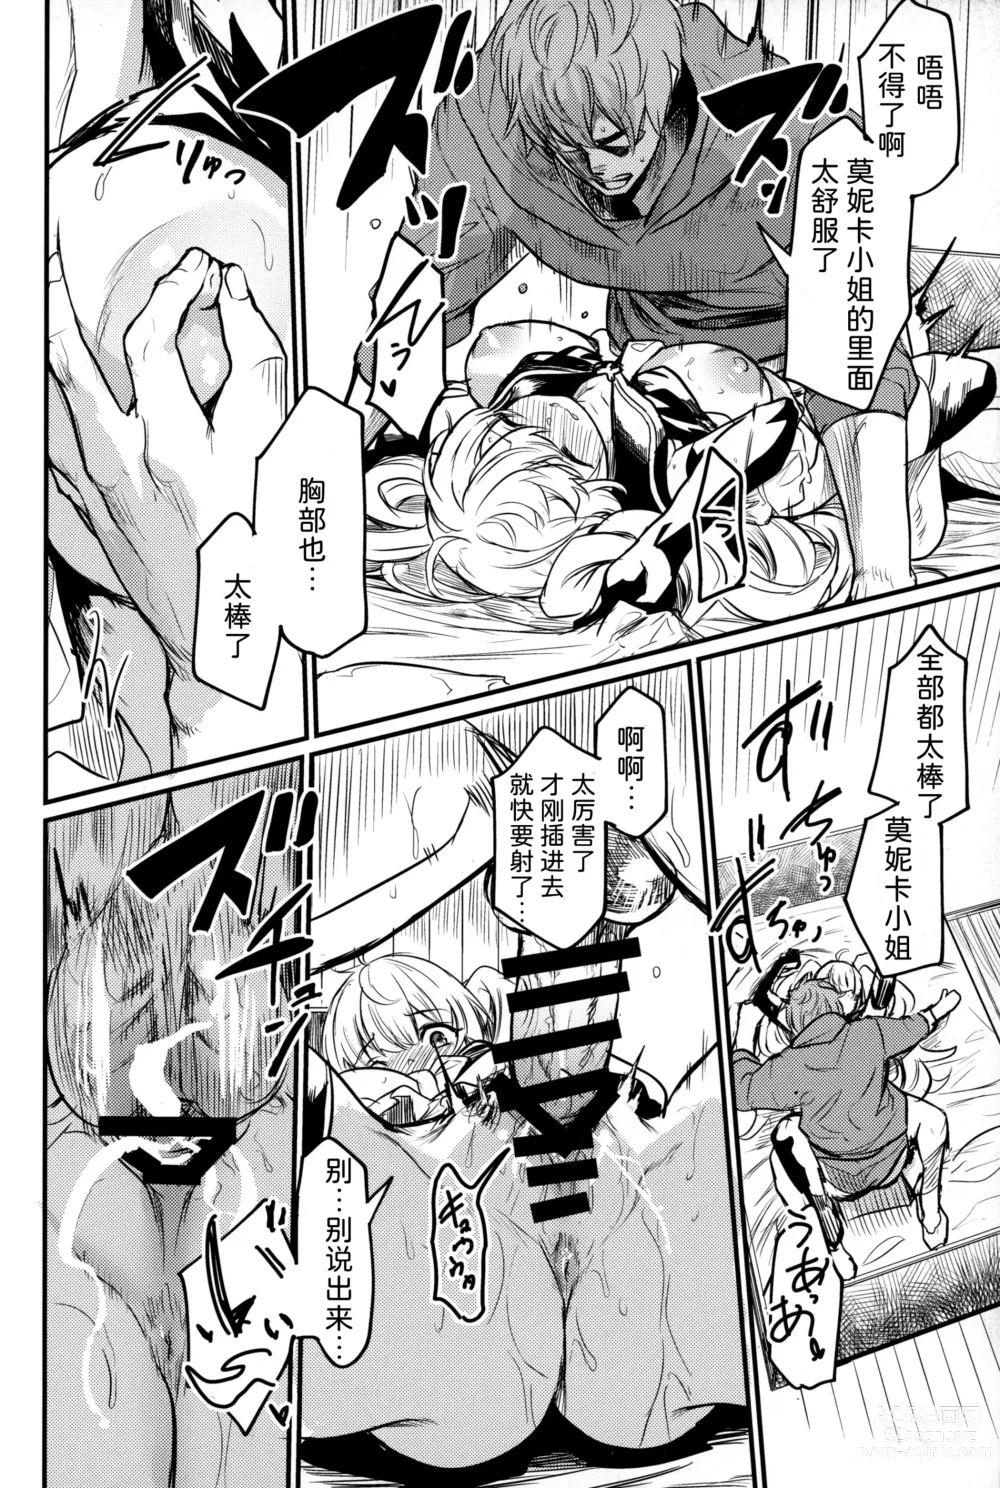 Page 19 of doujinshi Chitsujo Summer!